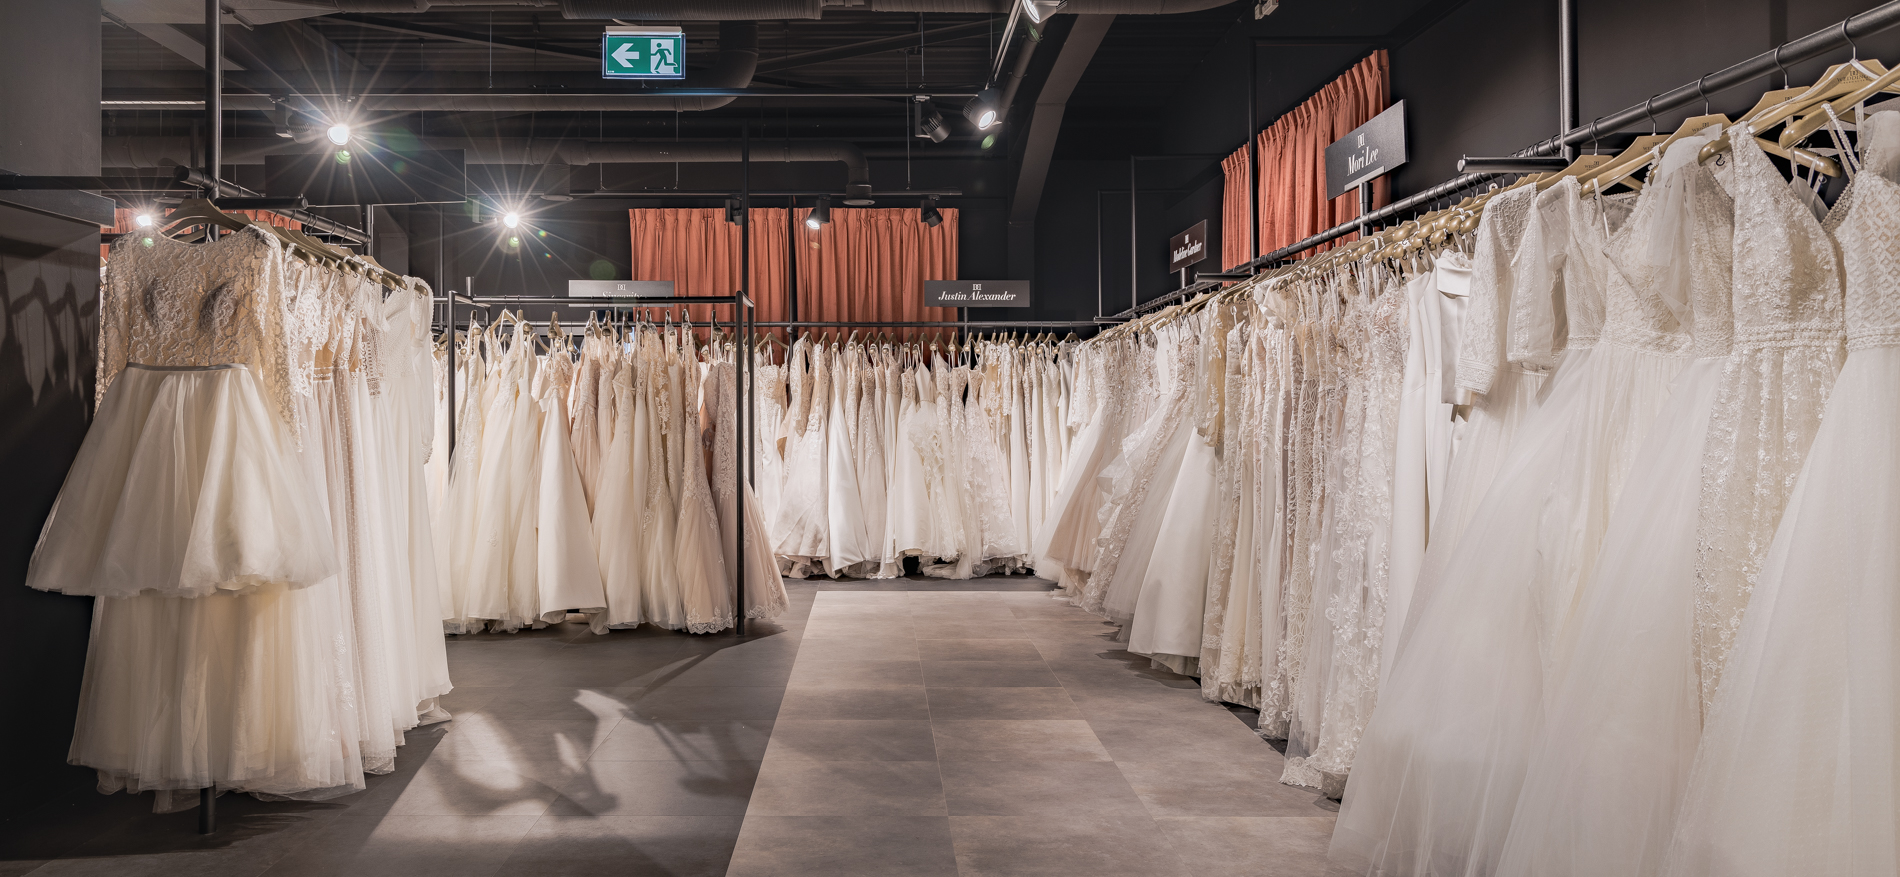 Wedding World bruidswinkel | Oberhausen (DE) - Mode